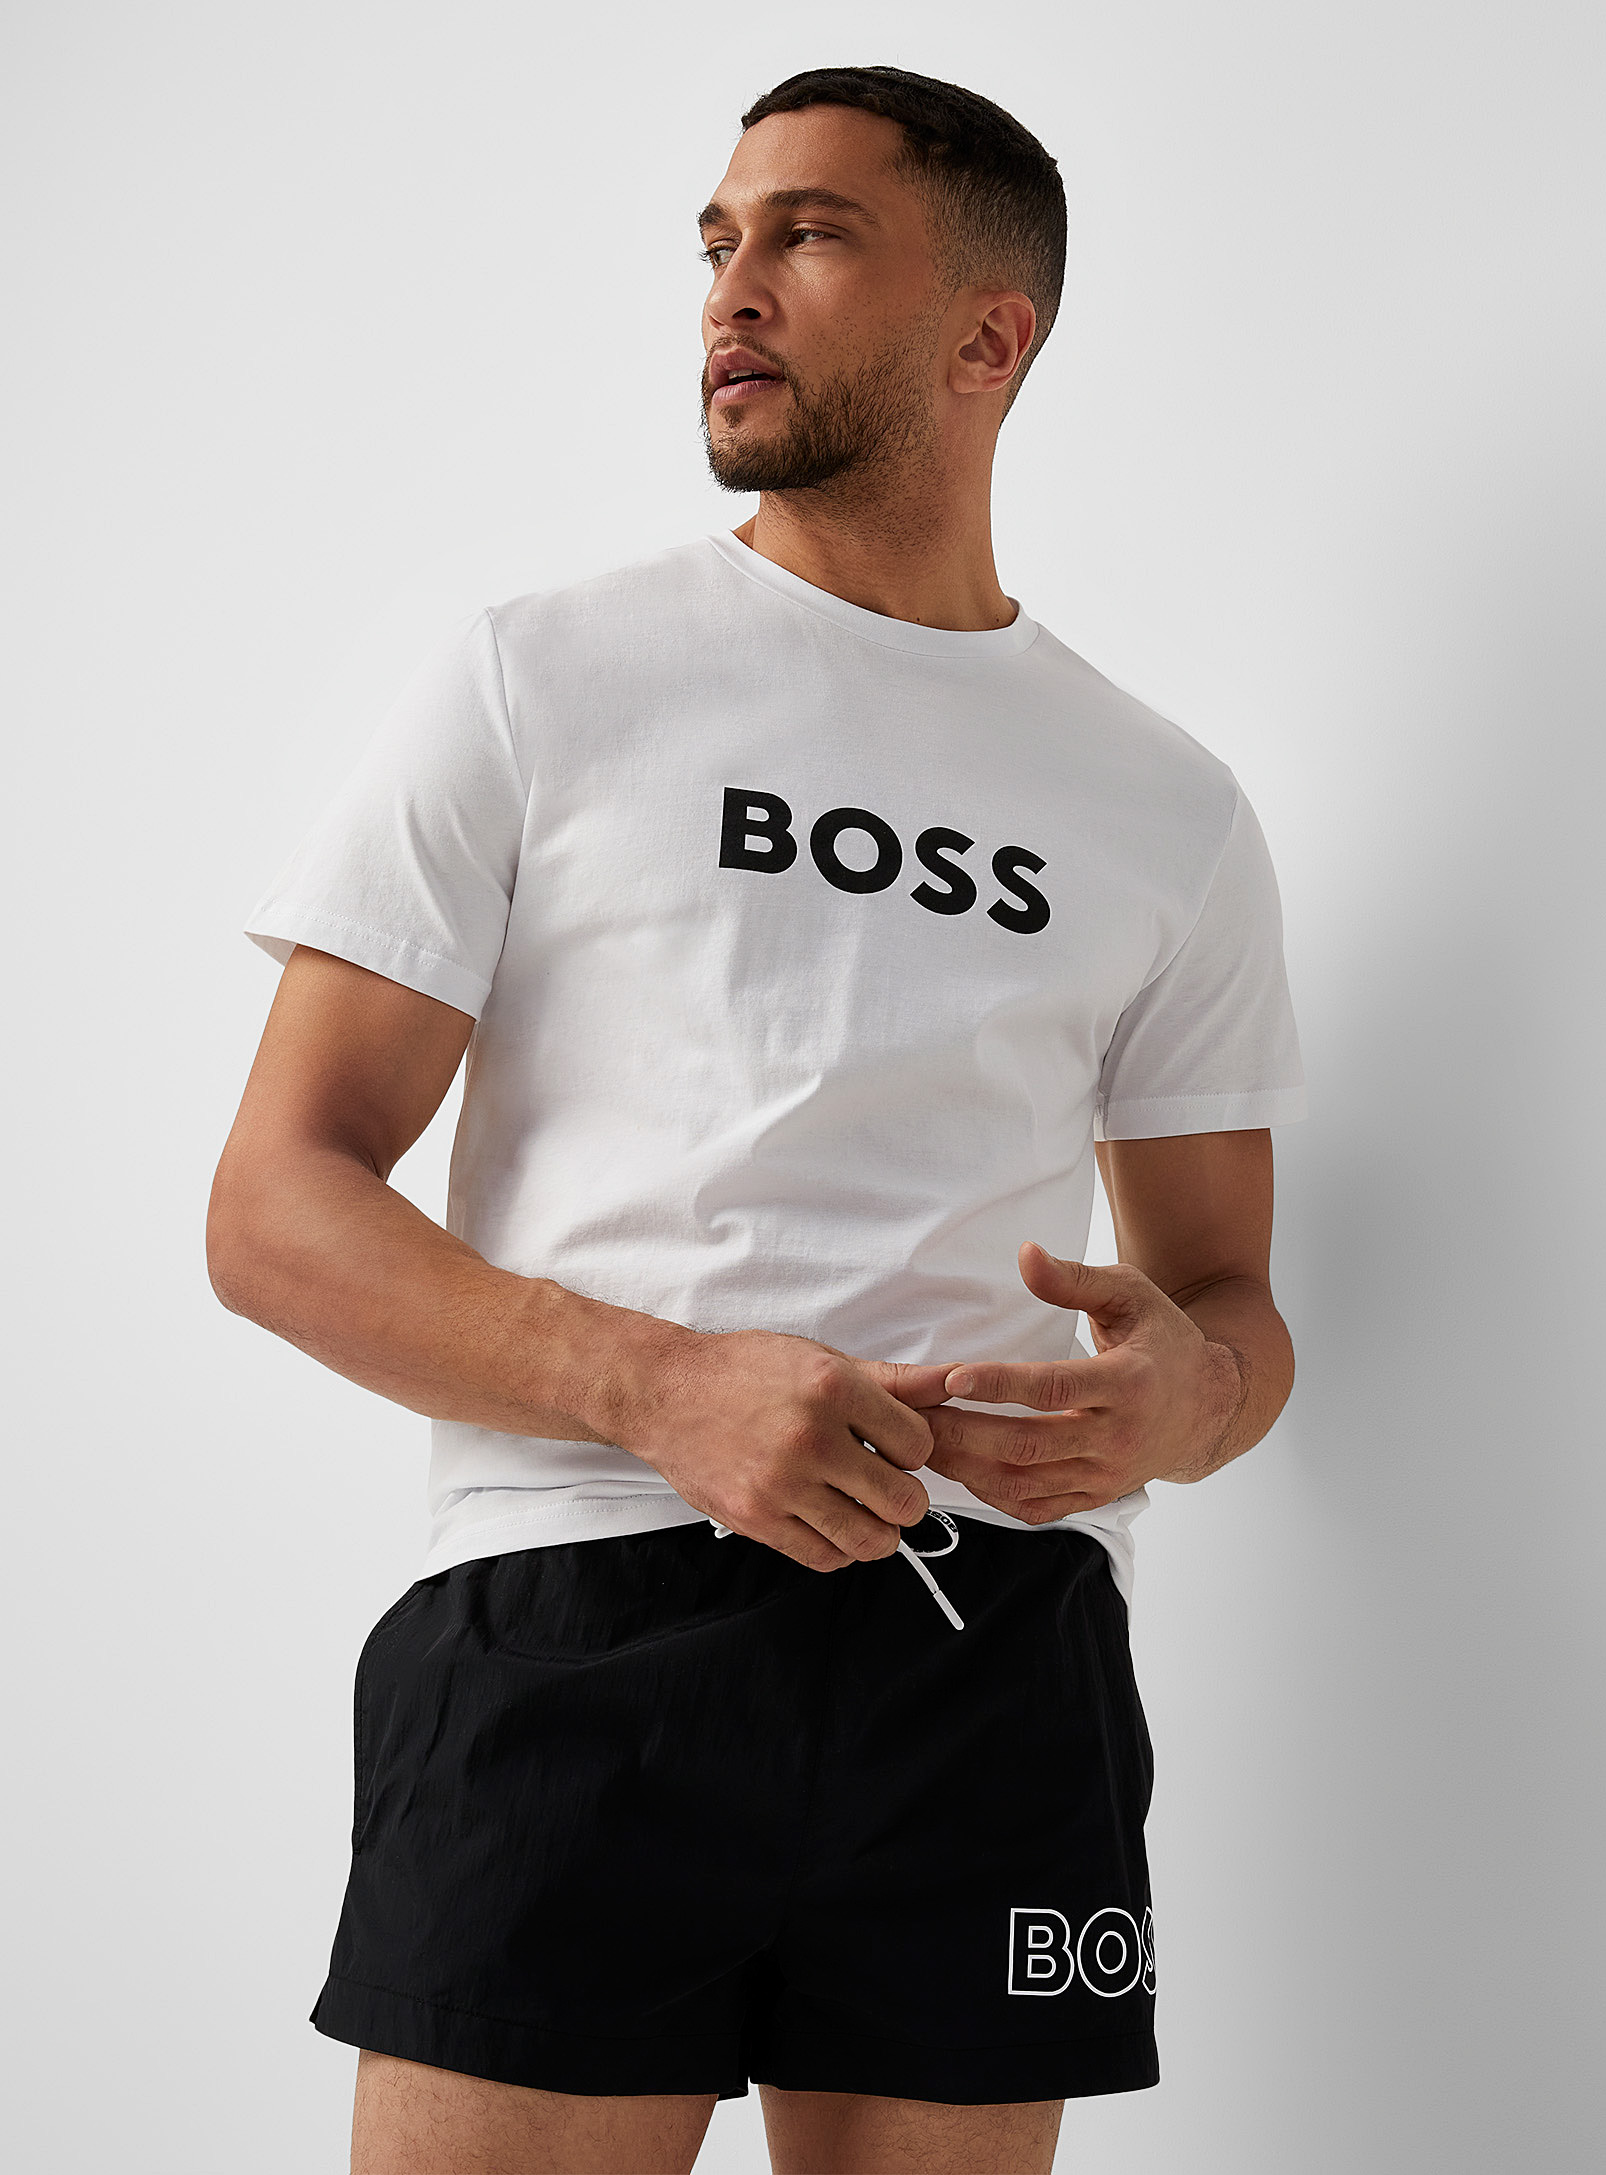 BOSS - Men's Branded UV protection T-shirt